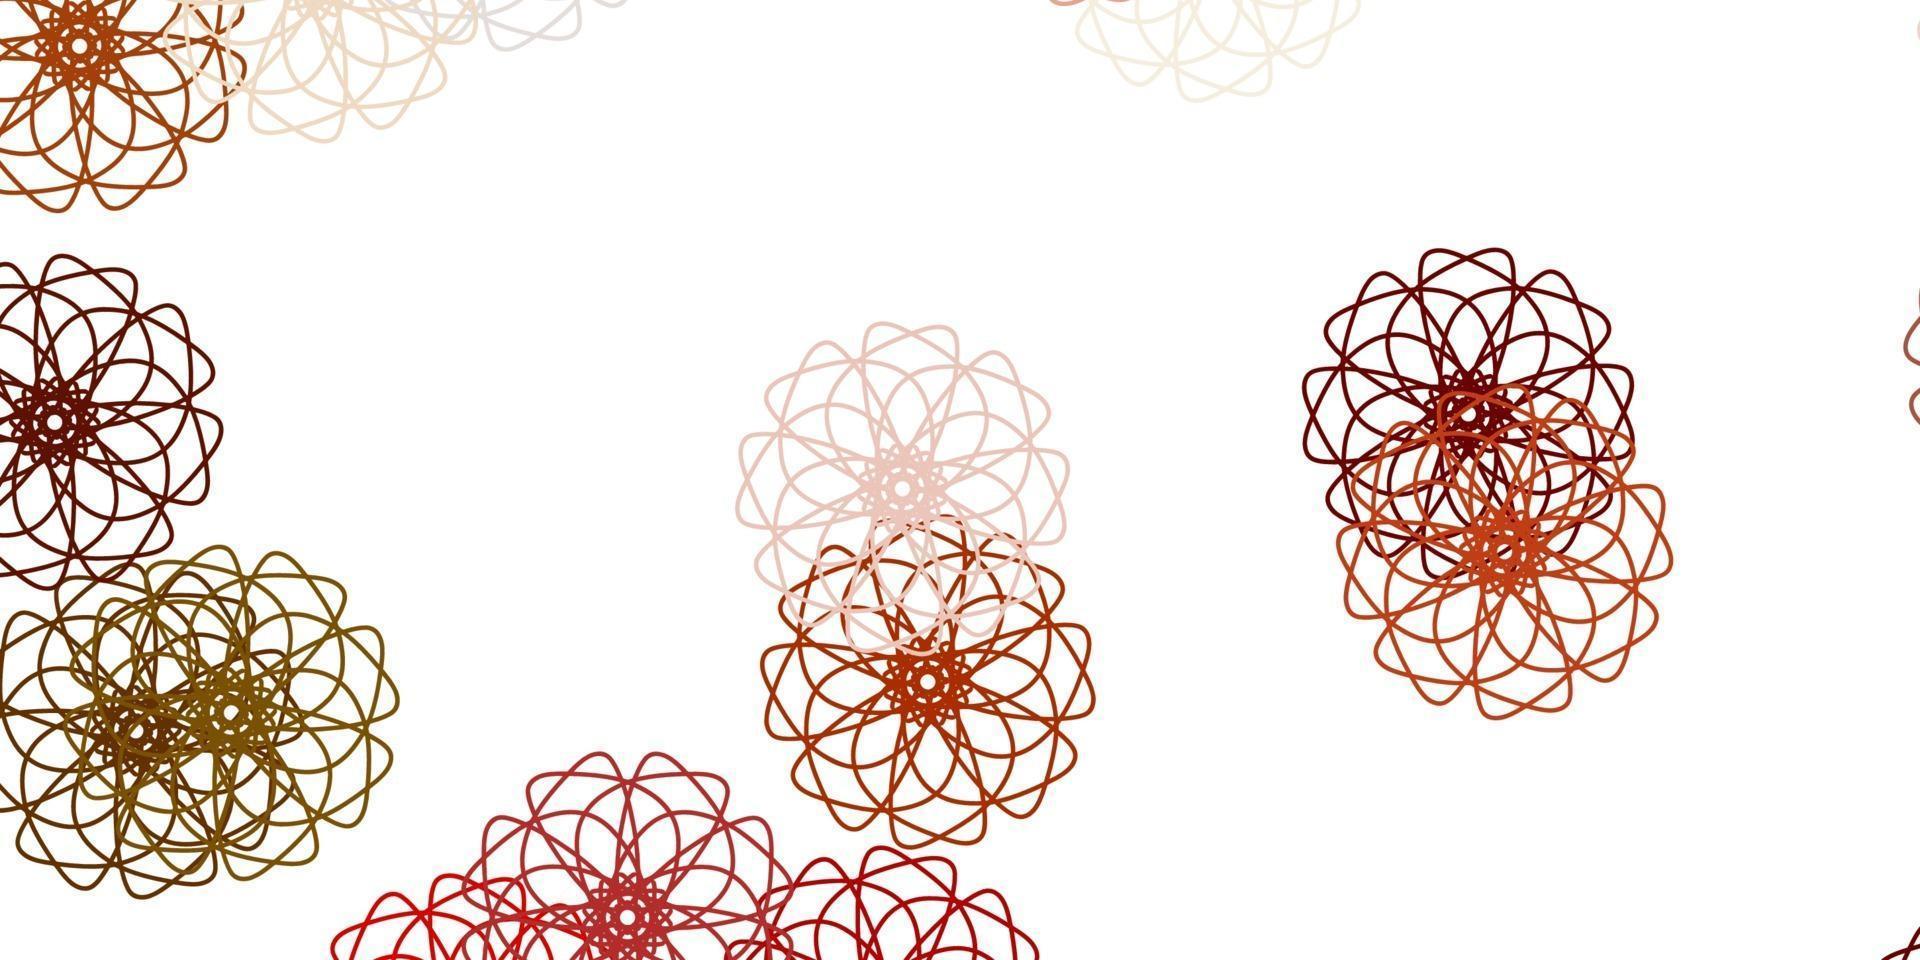 textura do doodle do vetor multicolor luz com flores.